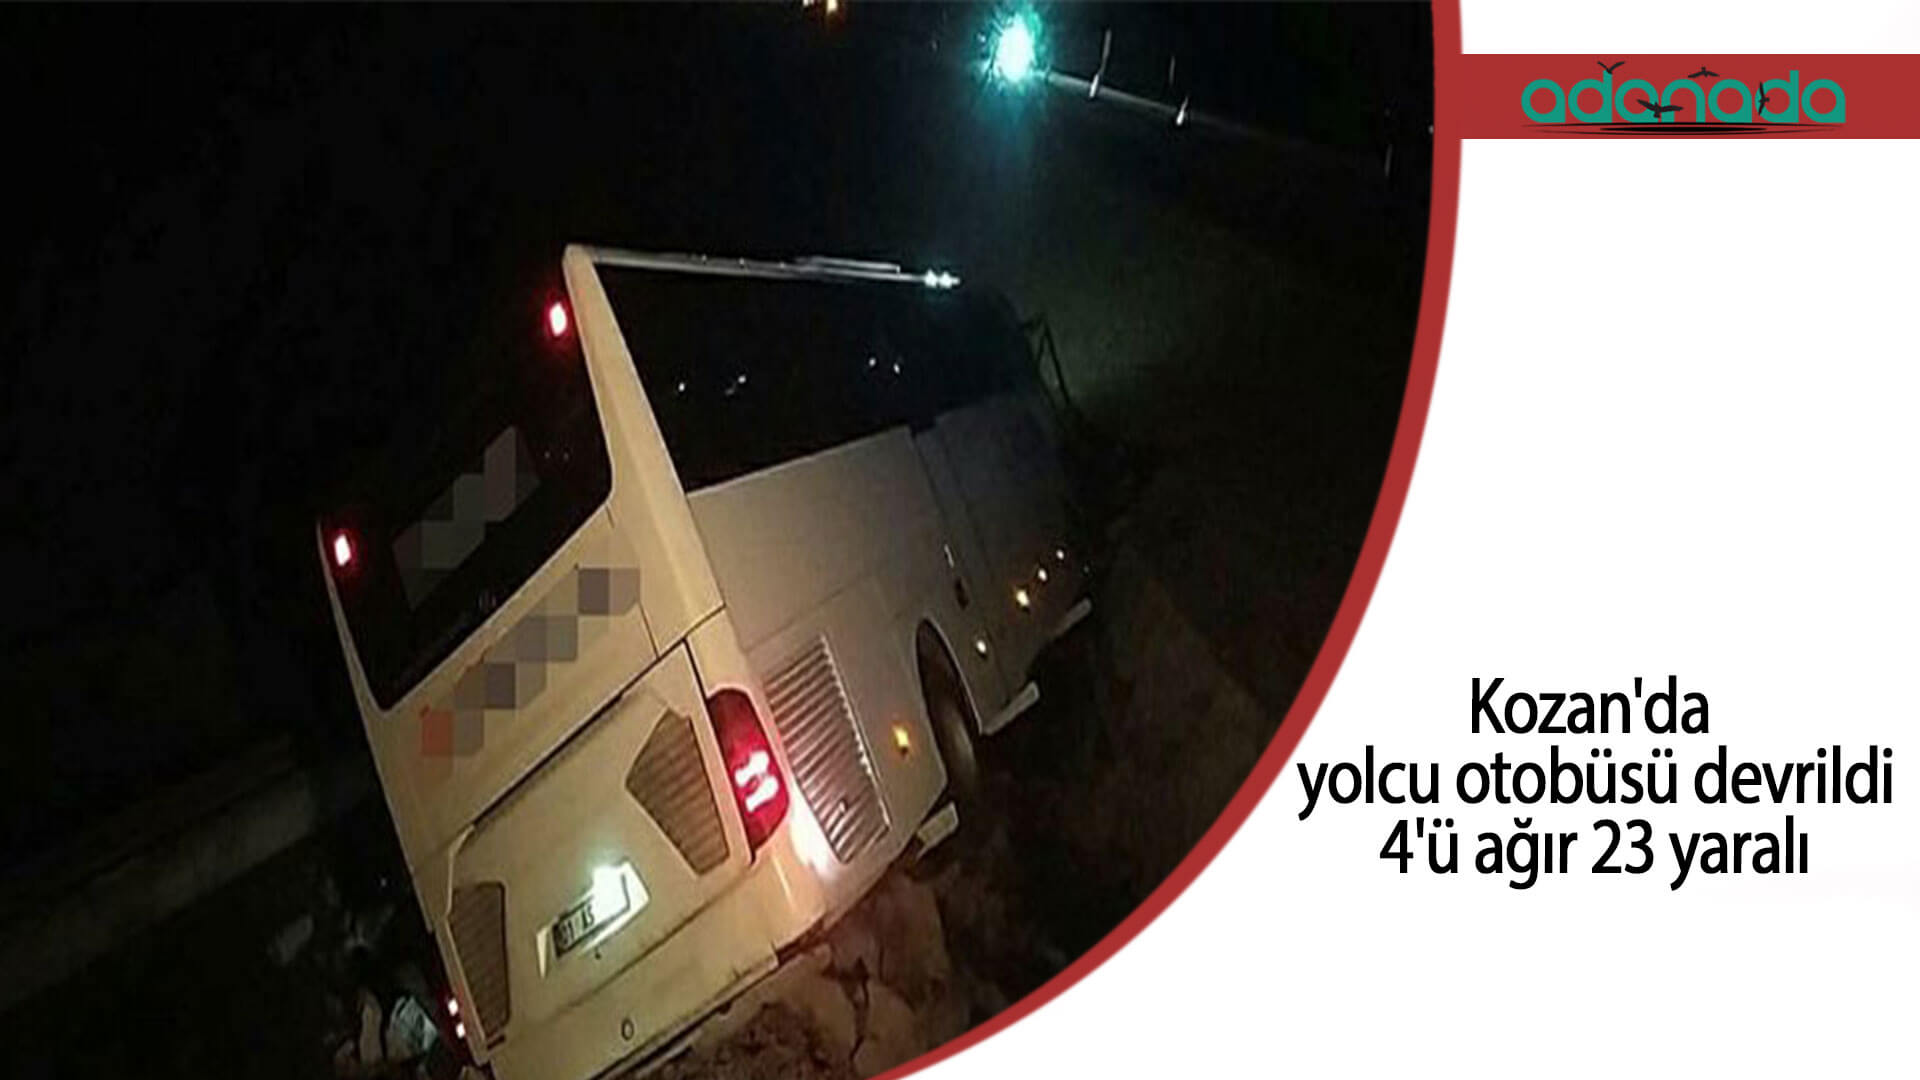 Kozan’da yolcu otobüsü devrildi: 4’ü ağır 23 yaralı